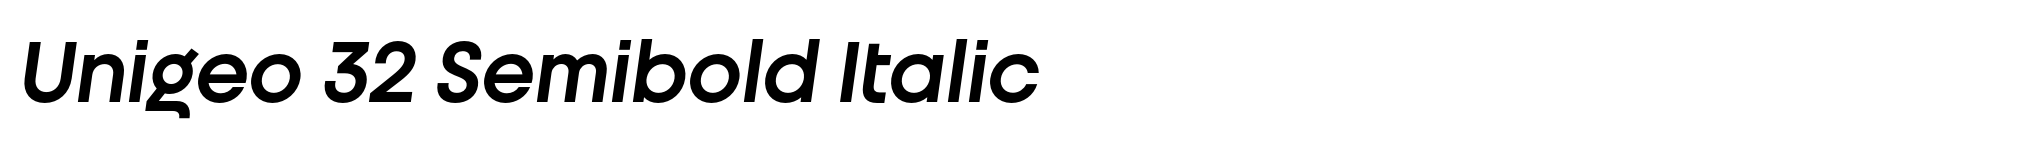 Unigeo 32 Semibold Italic image